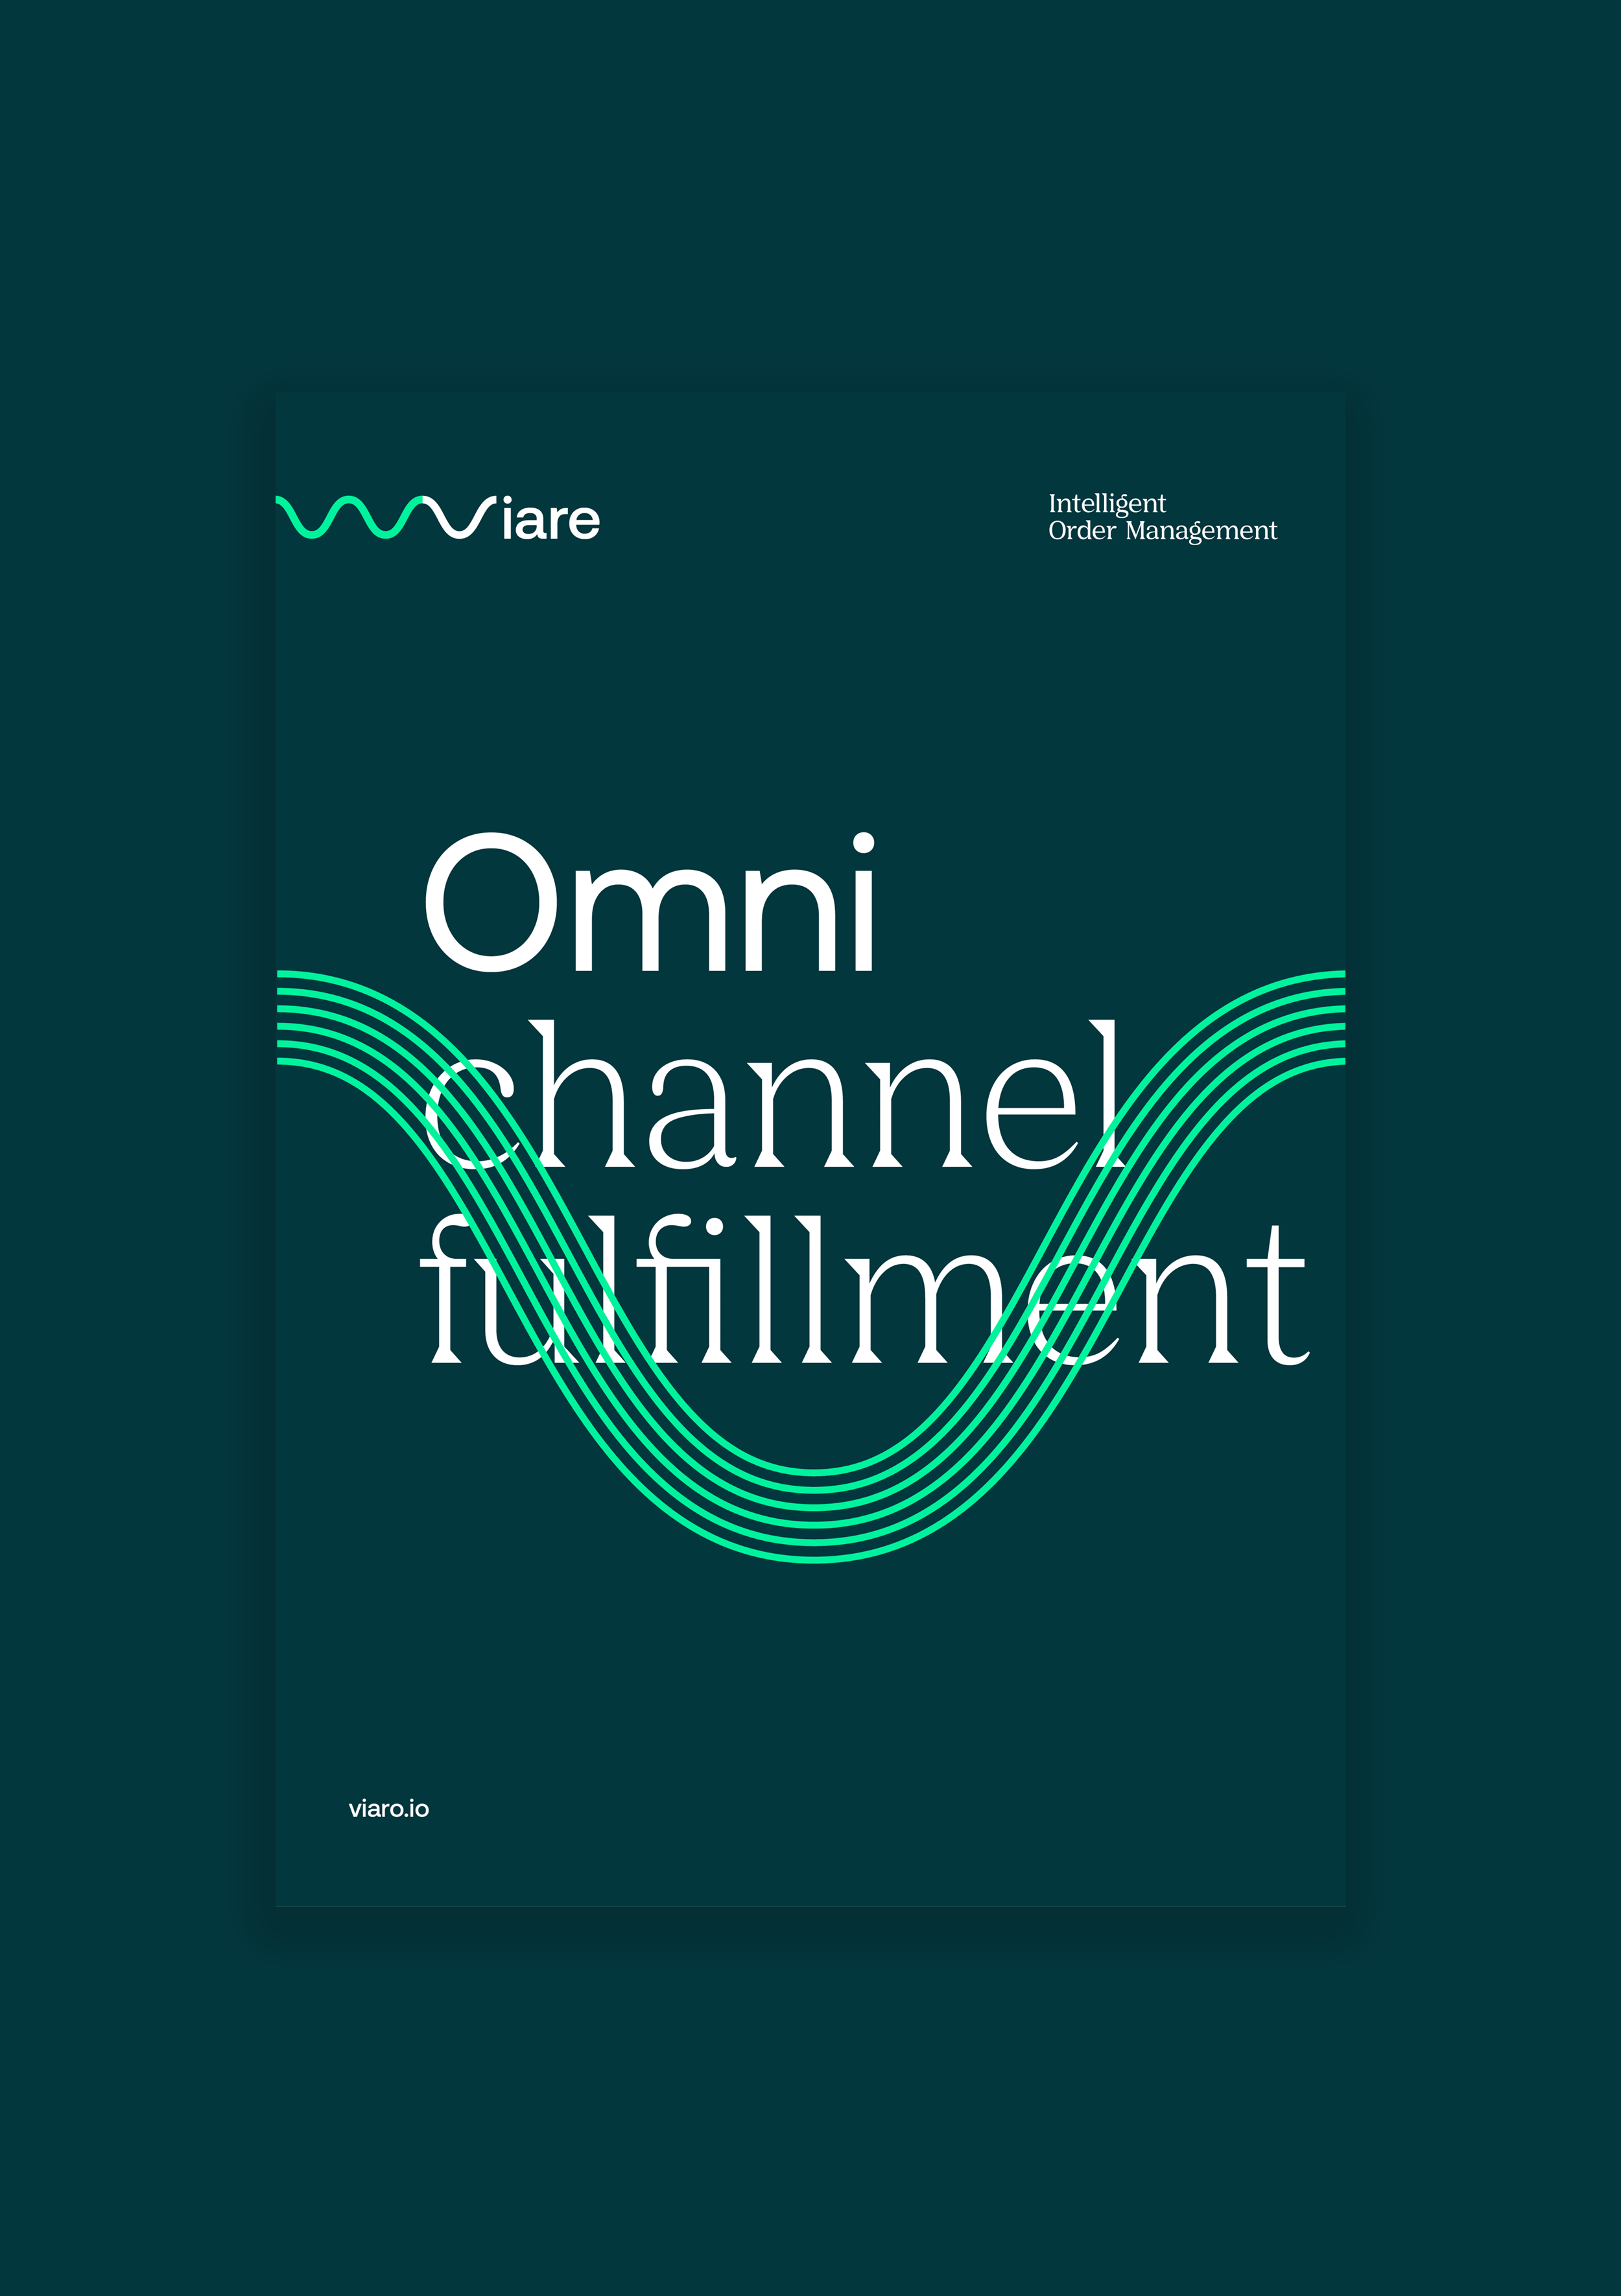 omni channel fulfillment